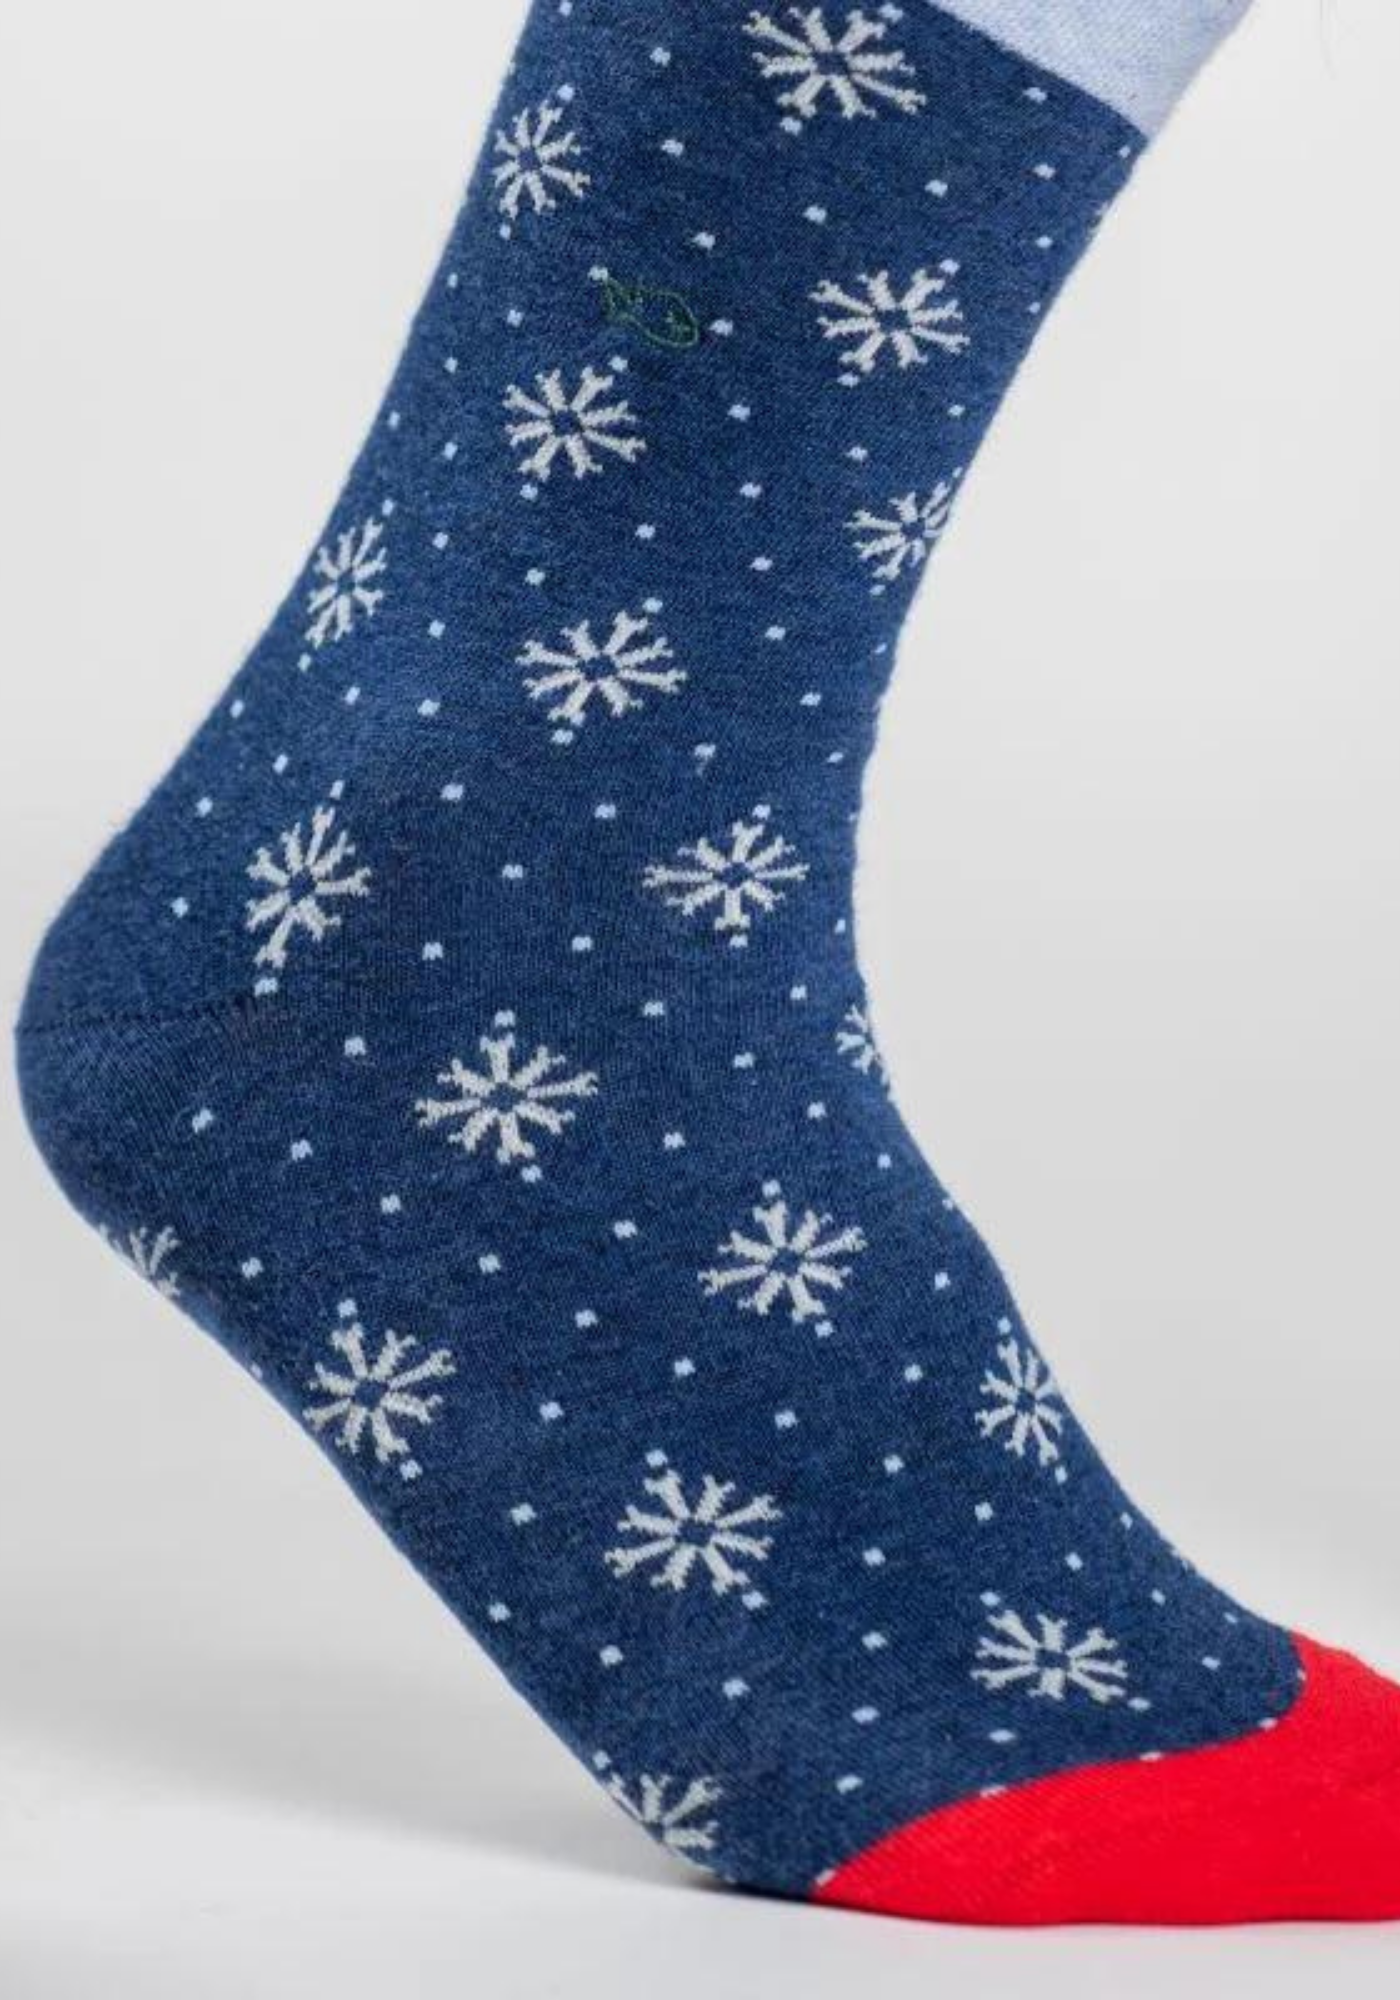 chaussette flocon de neige bleur et rouge billybelt